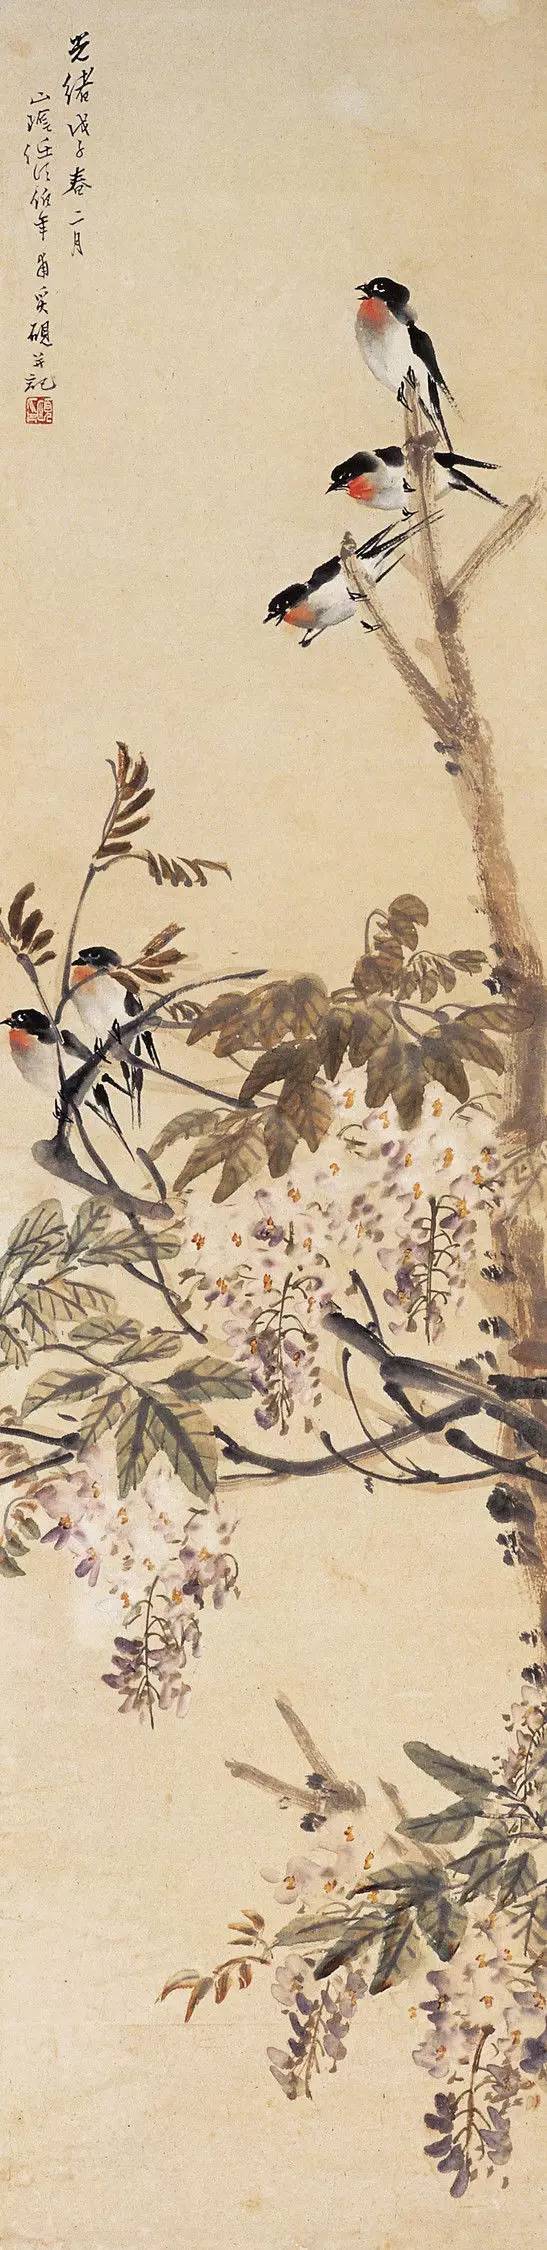 任伯年(1840—1896),即任颐,清末著名画家,是海派的重要代表.